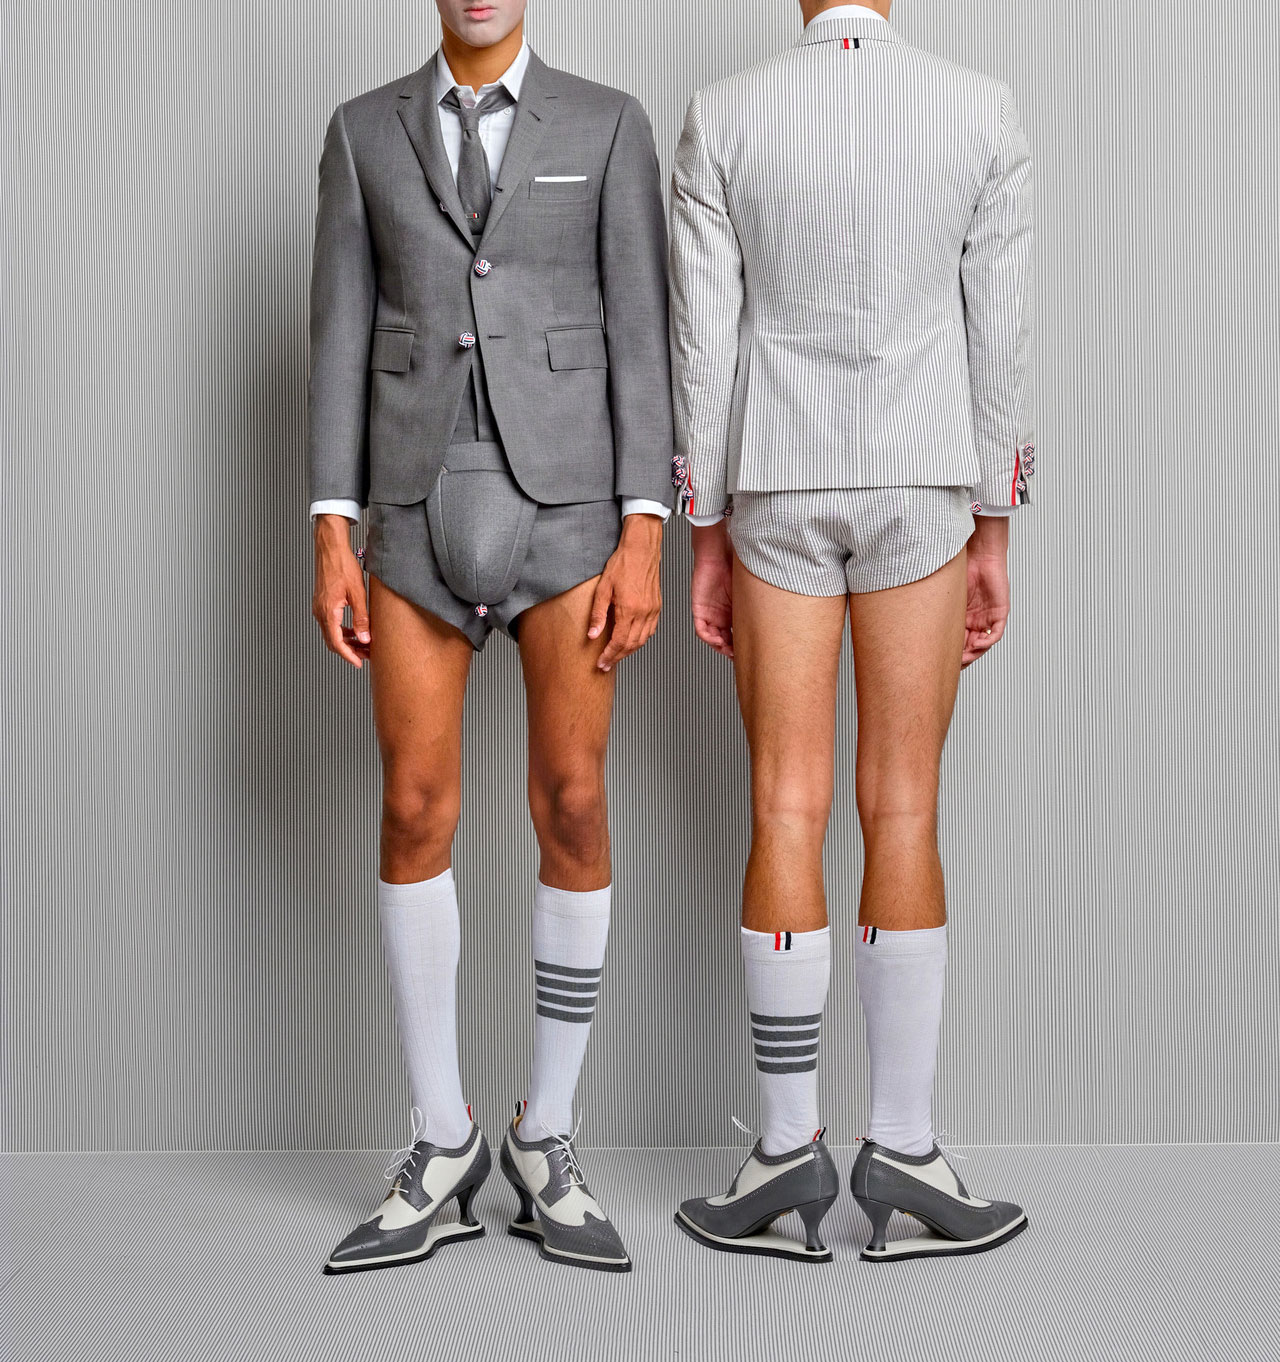 Постой модная с тобой. Смешной дресс код. Смешная одежда для мужчин. Странная мужская мода. Смешные мужские костюмы.